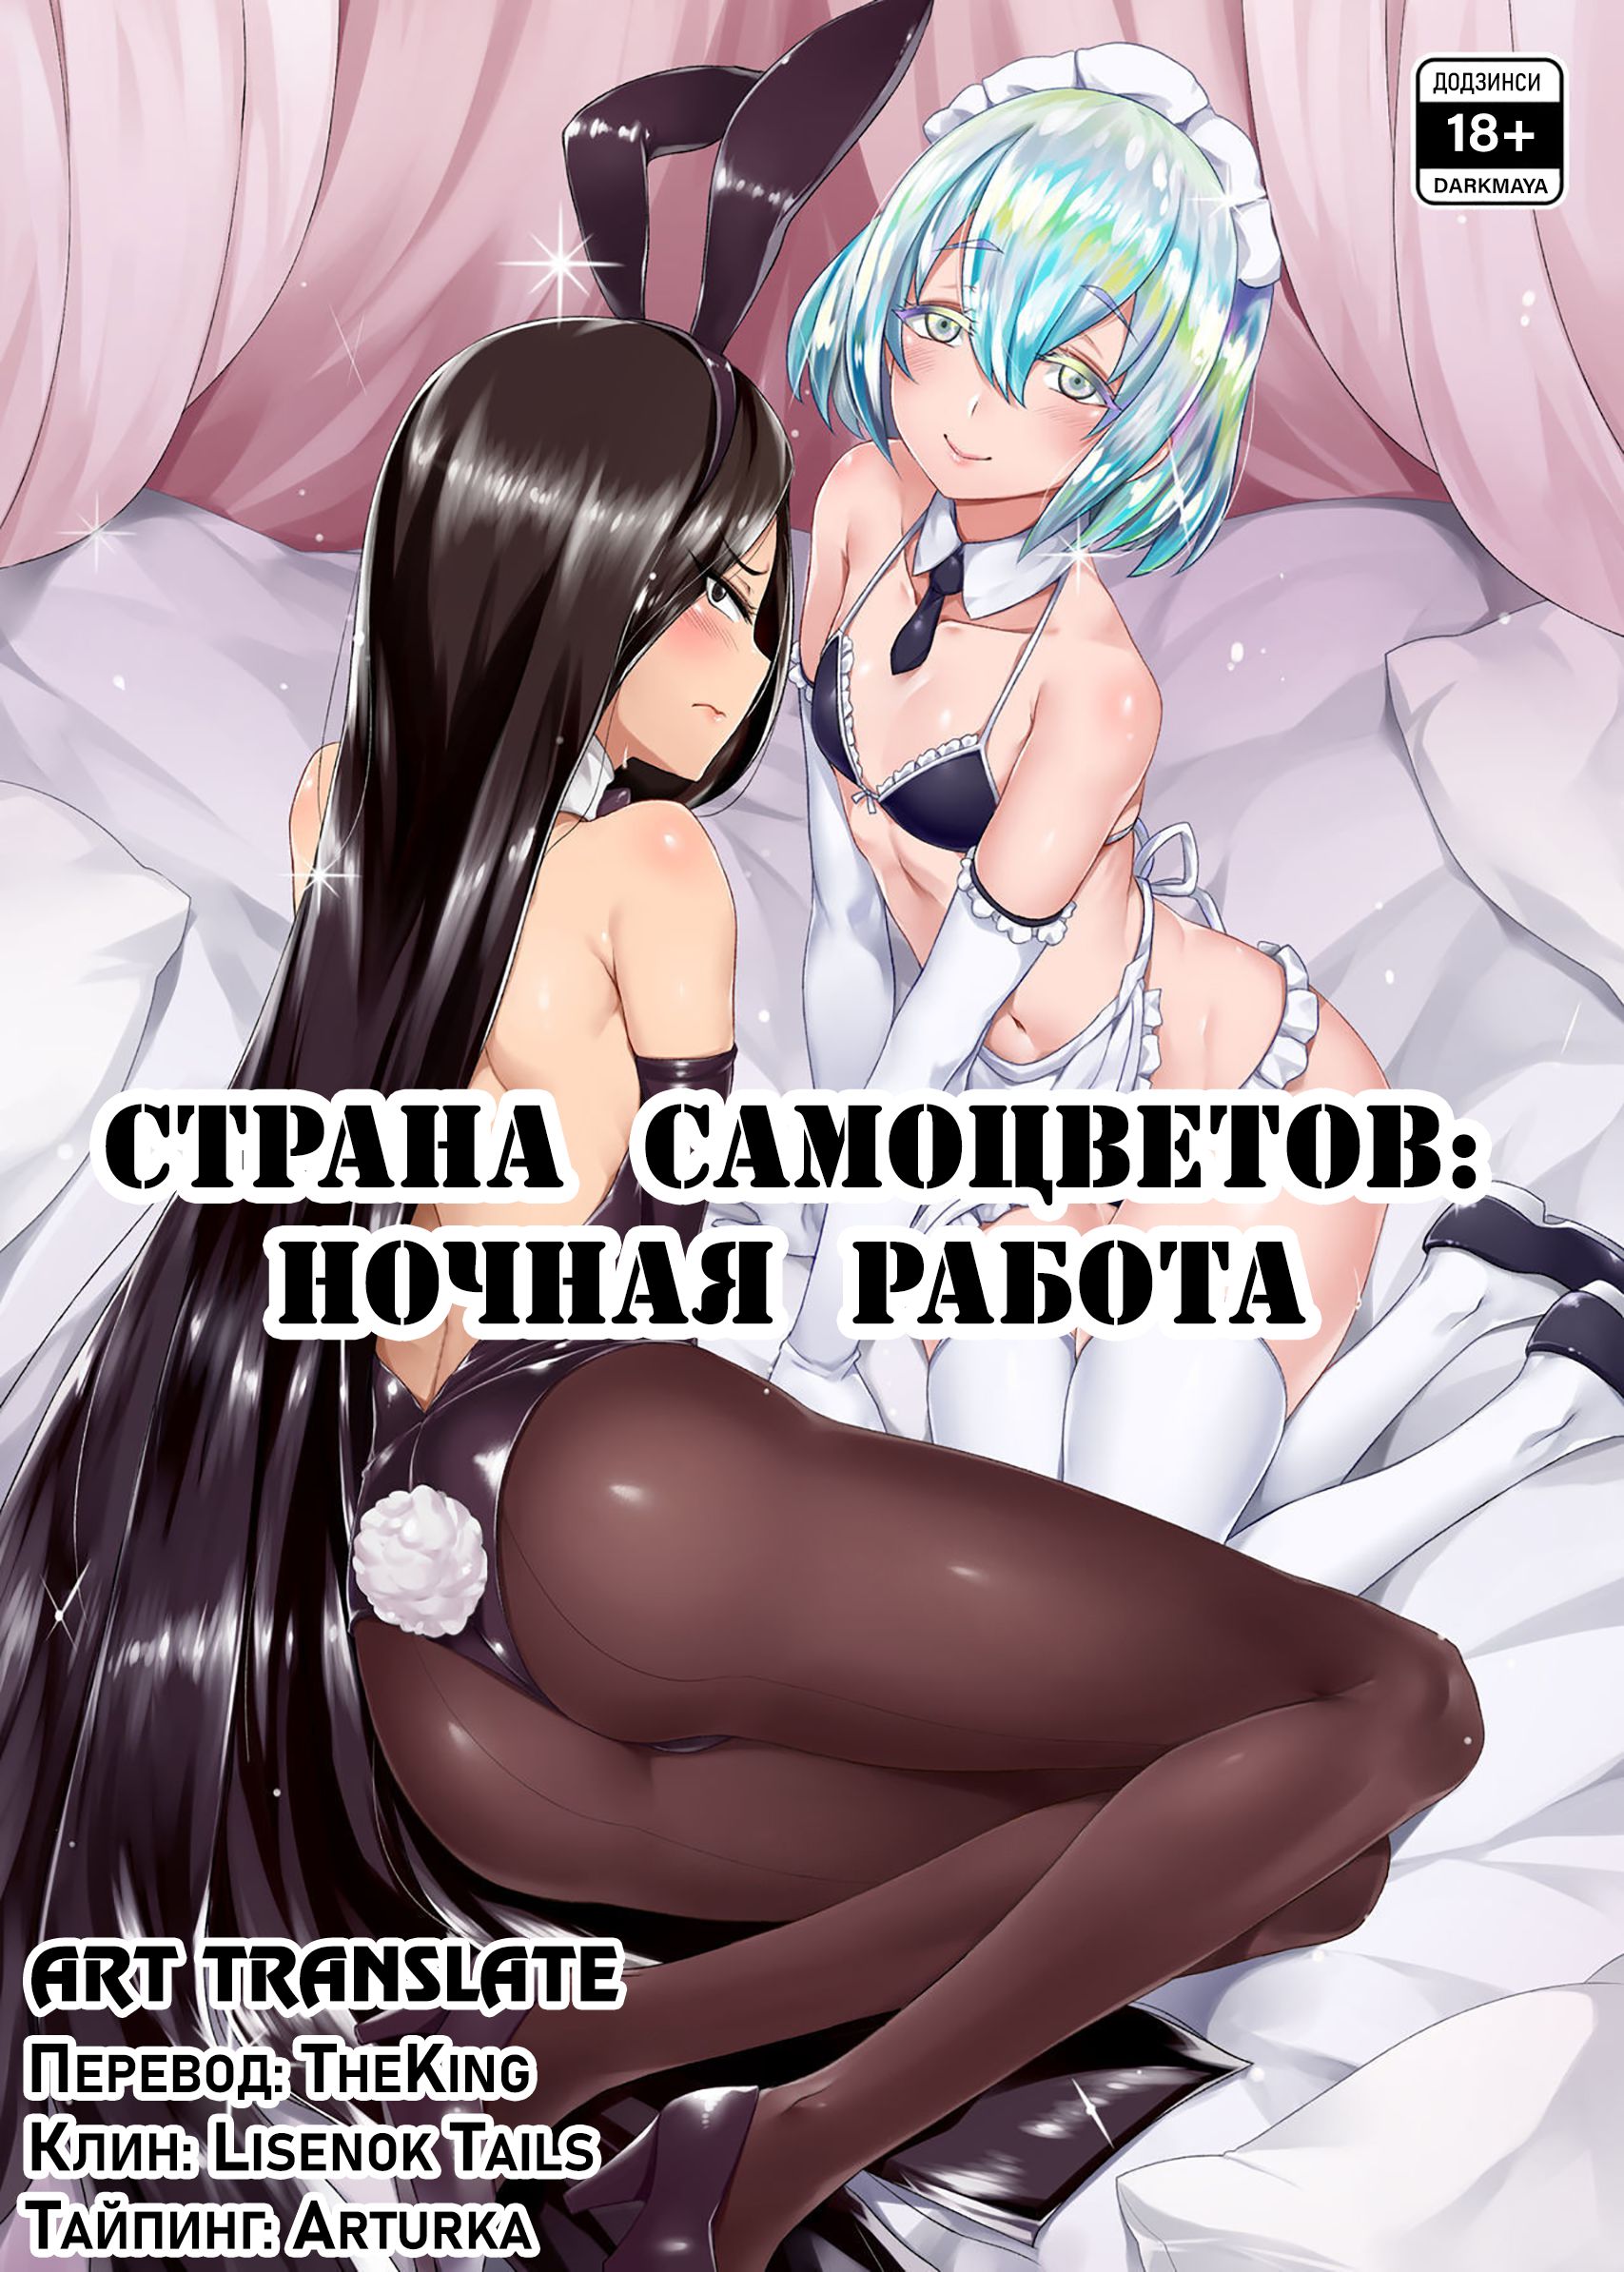 Русское порно по категориям